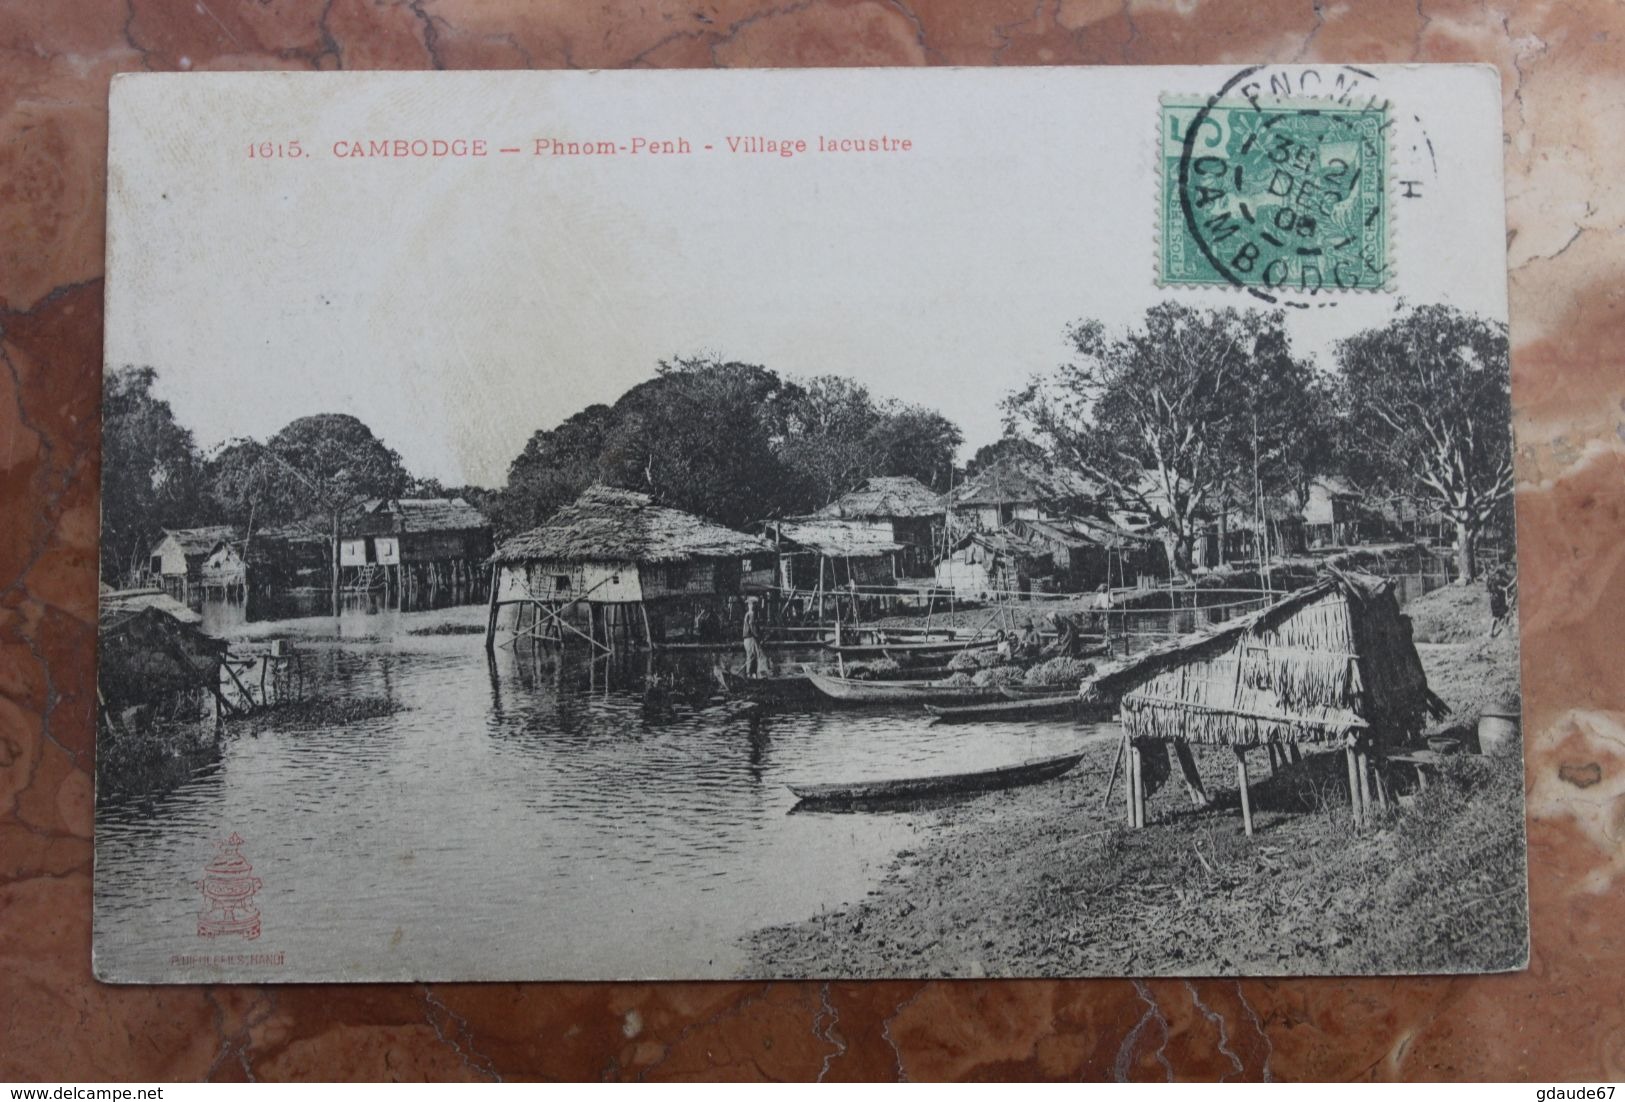 PHNOM-PENH (CAMBODGE) - 1615. VILLAGE LACUSTRE - Cambodge